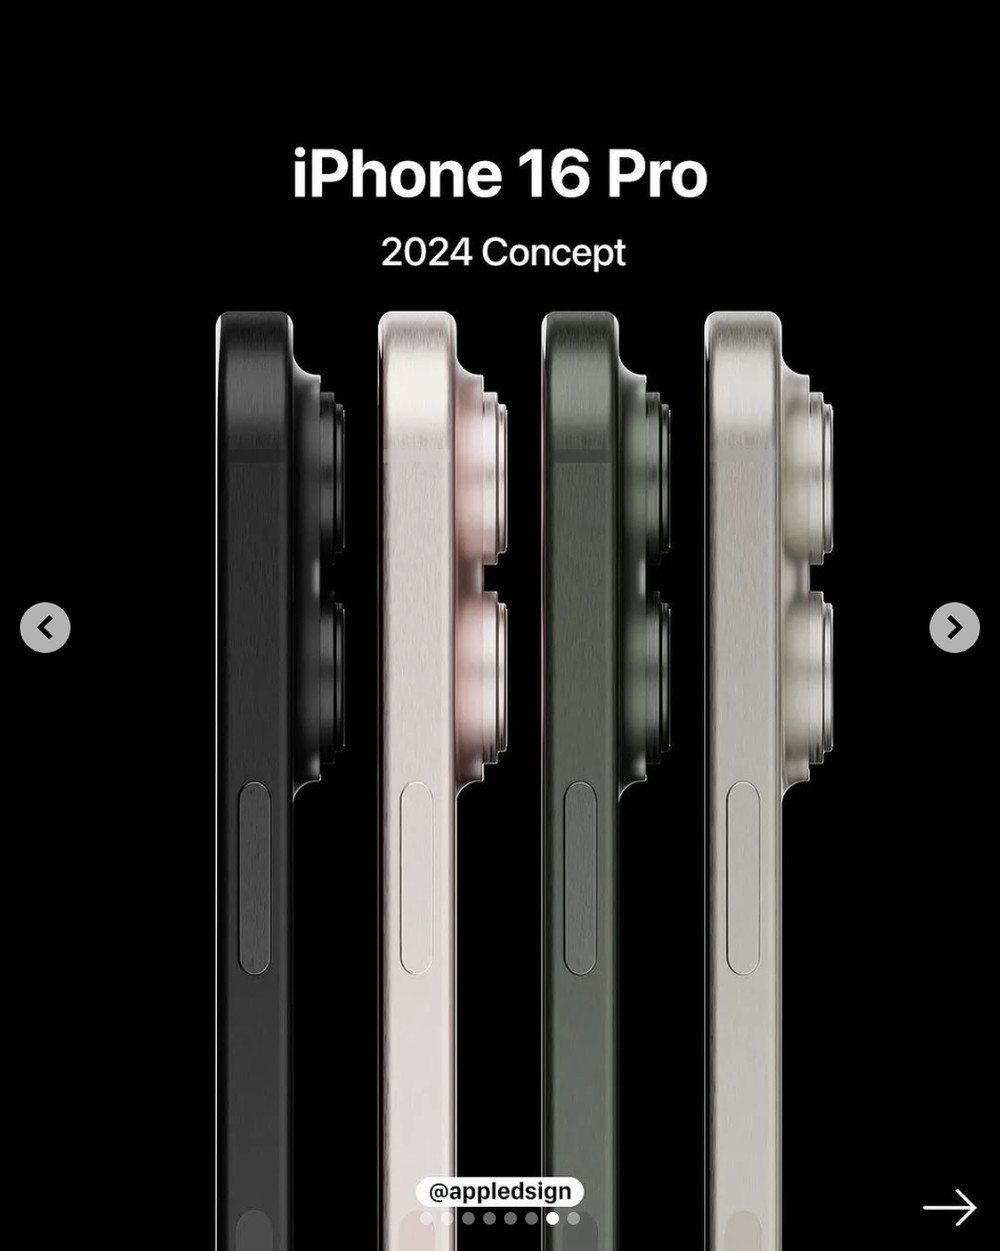 iPhone 16 hé lộ giao diện mới, thay đổi thiết kế với 4 camera, phối màu mới khiến dân tình “nứt mắt” - ảnh 2